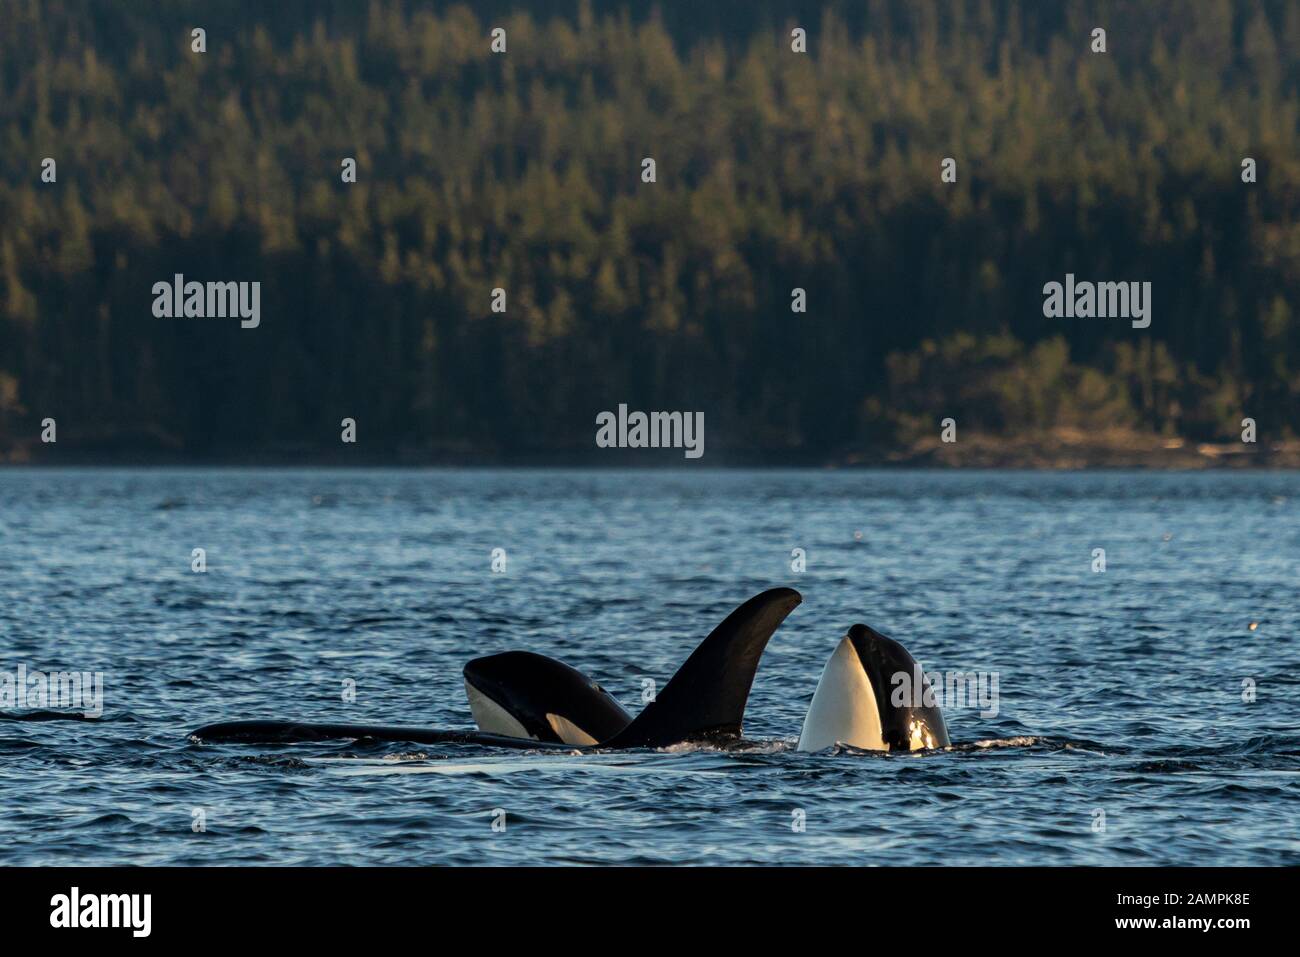 Avvistamento delle balene killer residenti nel nord con due spy-hopping nello stretto di Johnstone, Nel territorio Delle prime Nazioni, nell'isola di Vancouver, nella British Columbia, in Canada. Foto Stock